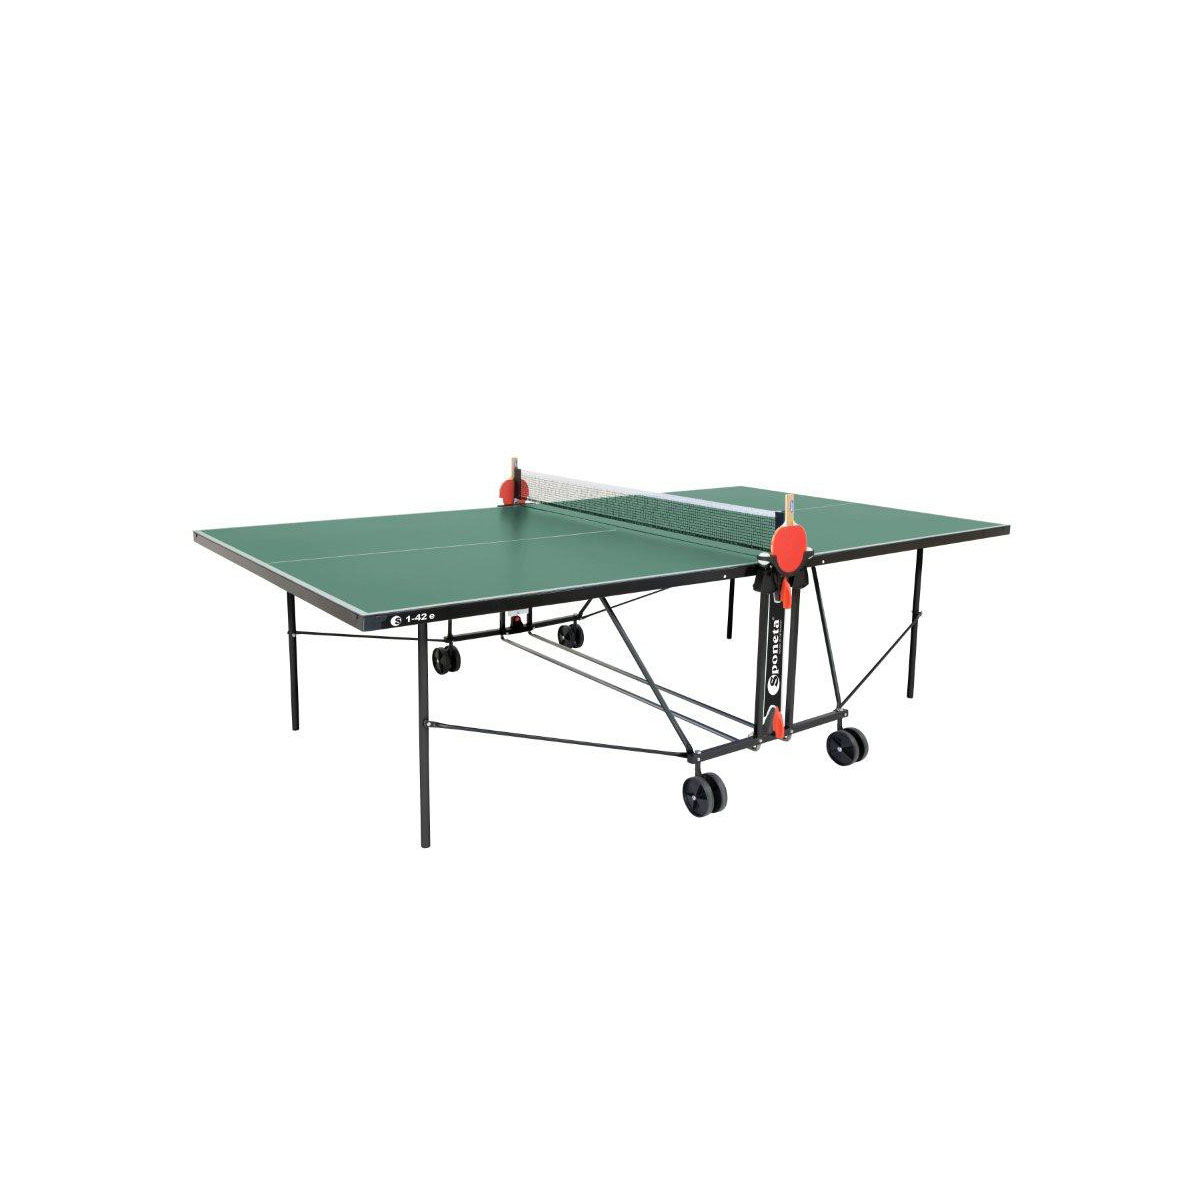 Grün Tischtennisplatte S 1-42 Outdoor wetterfest K000779969 Grün e Tisch | | Sponeta Tischtennis